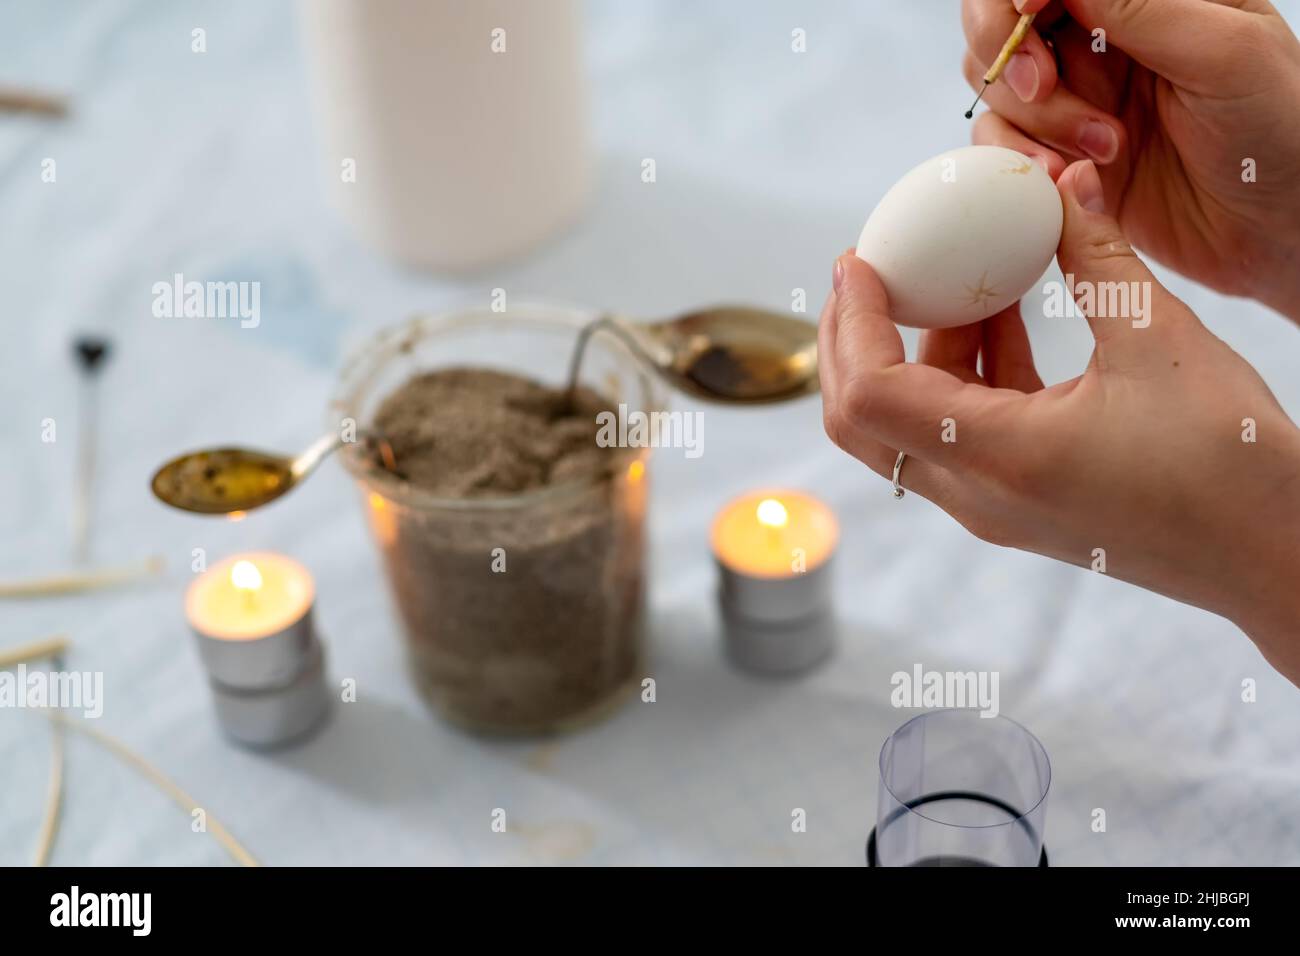 Le mani femminili dipingono un uovo di Pasqua bianco secondo la tradizione tedesca sorbiana con una testa dell'ago e le api fuse e la cera della candela della luce del tè, spazio di copia Foto Stock